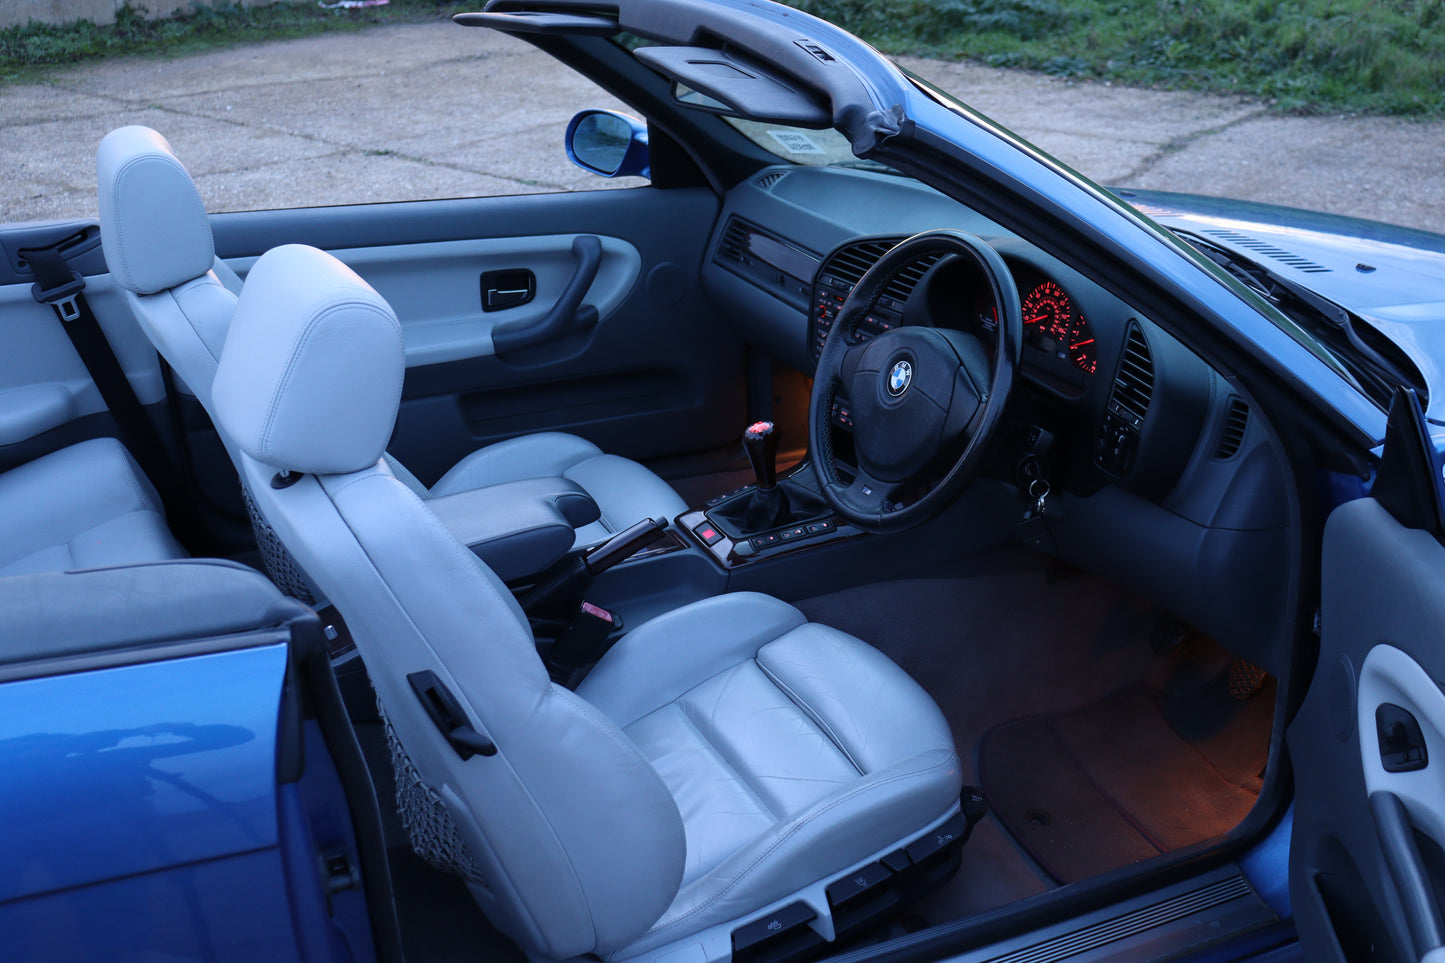 1997 BMW M3 Evo Convertible (E36)